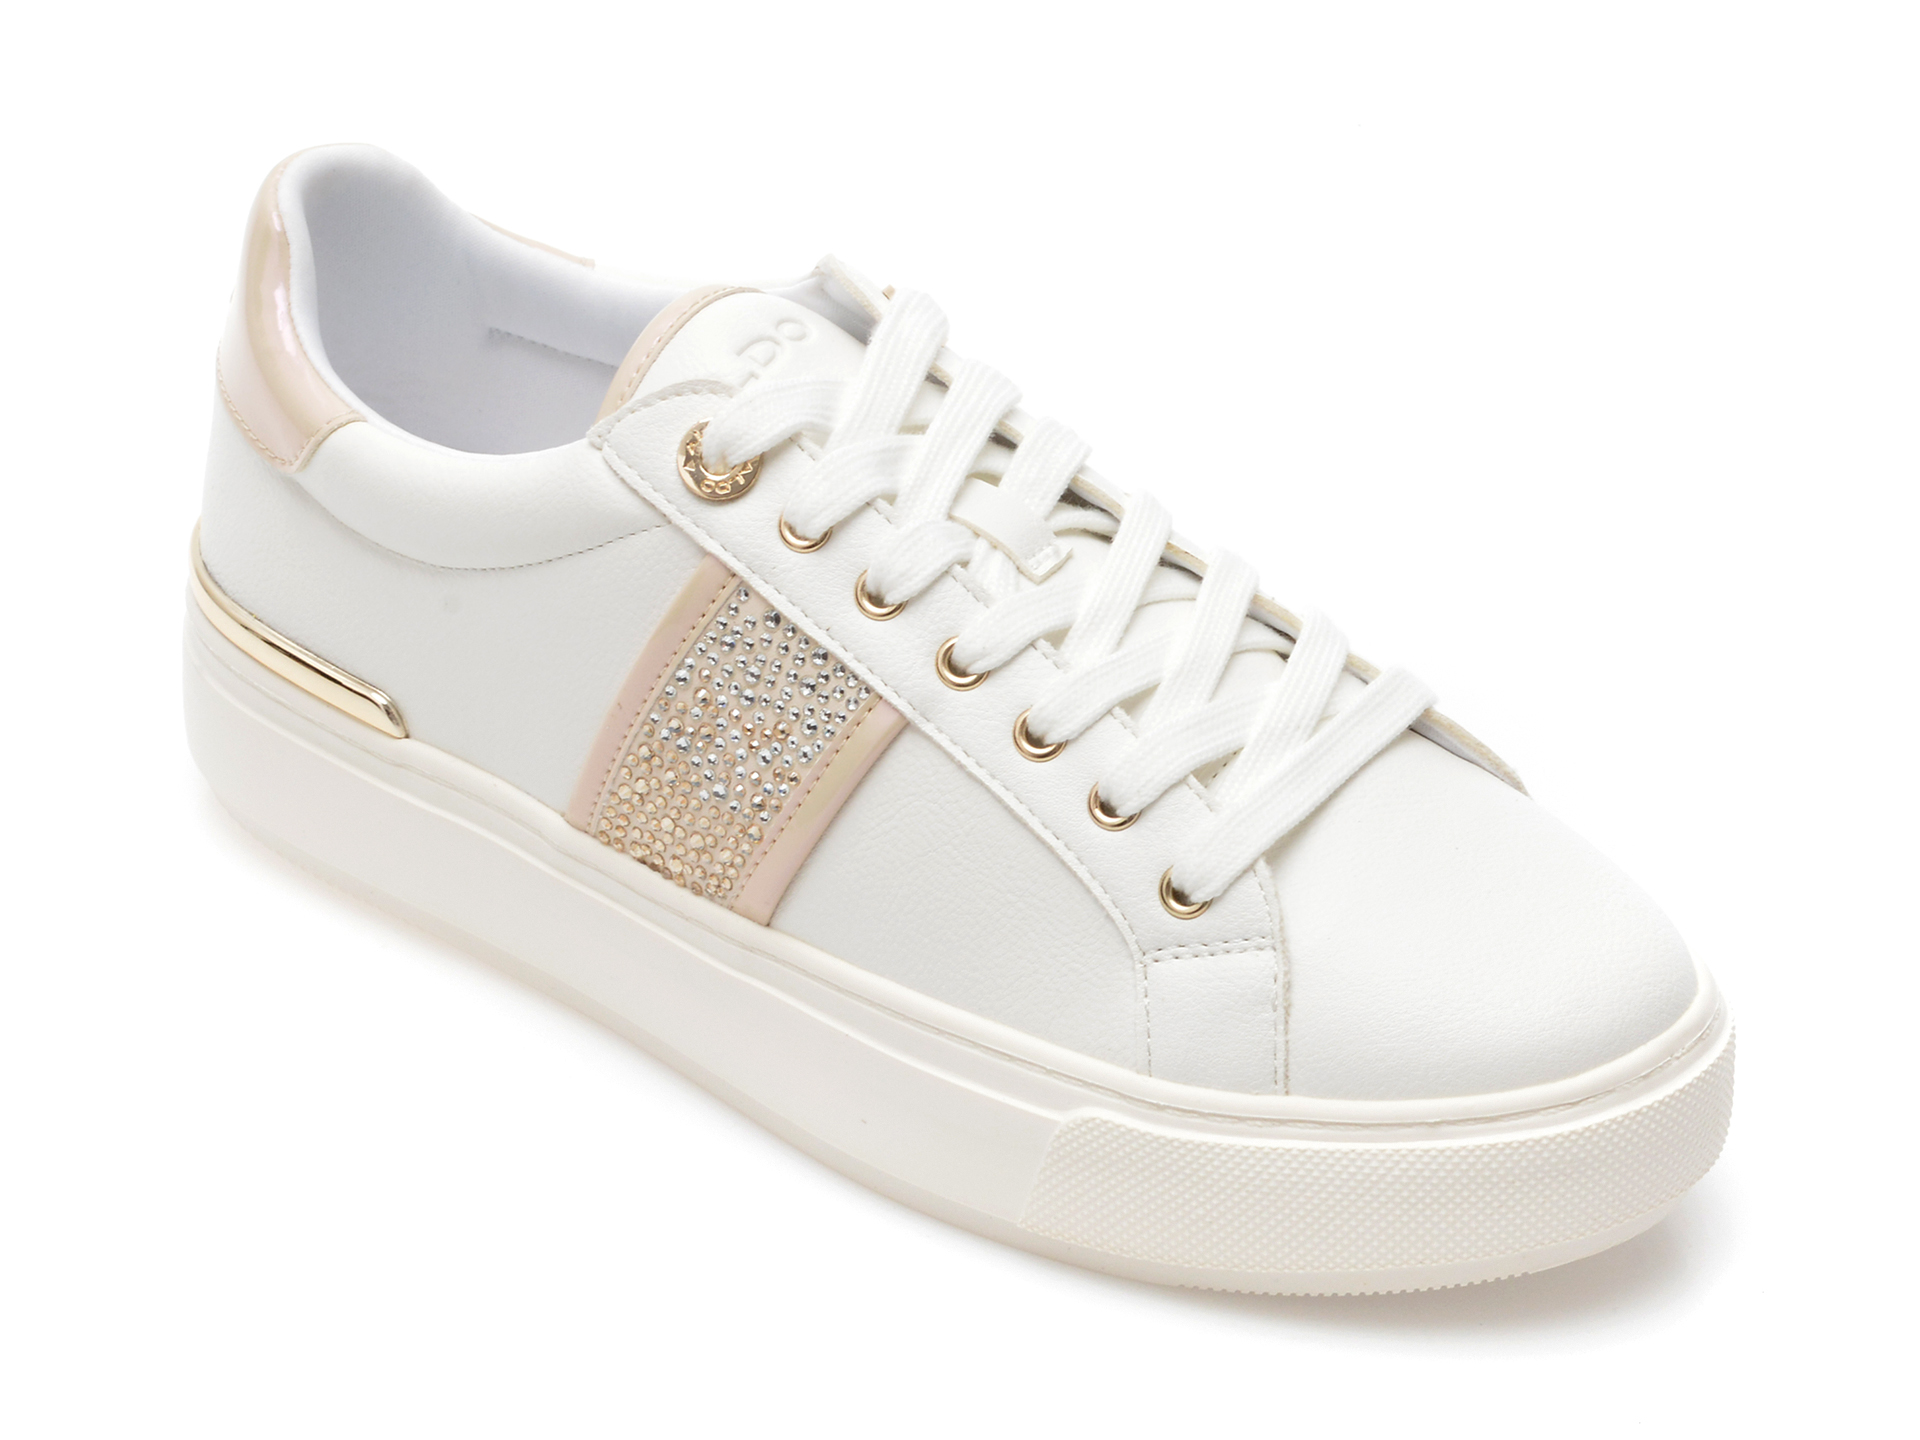 Pantofi ALDO albi, SERPERA100, din piele ecologica imagine reduceri black friday 2021 Aldo